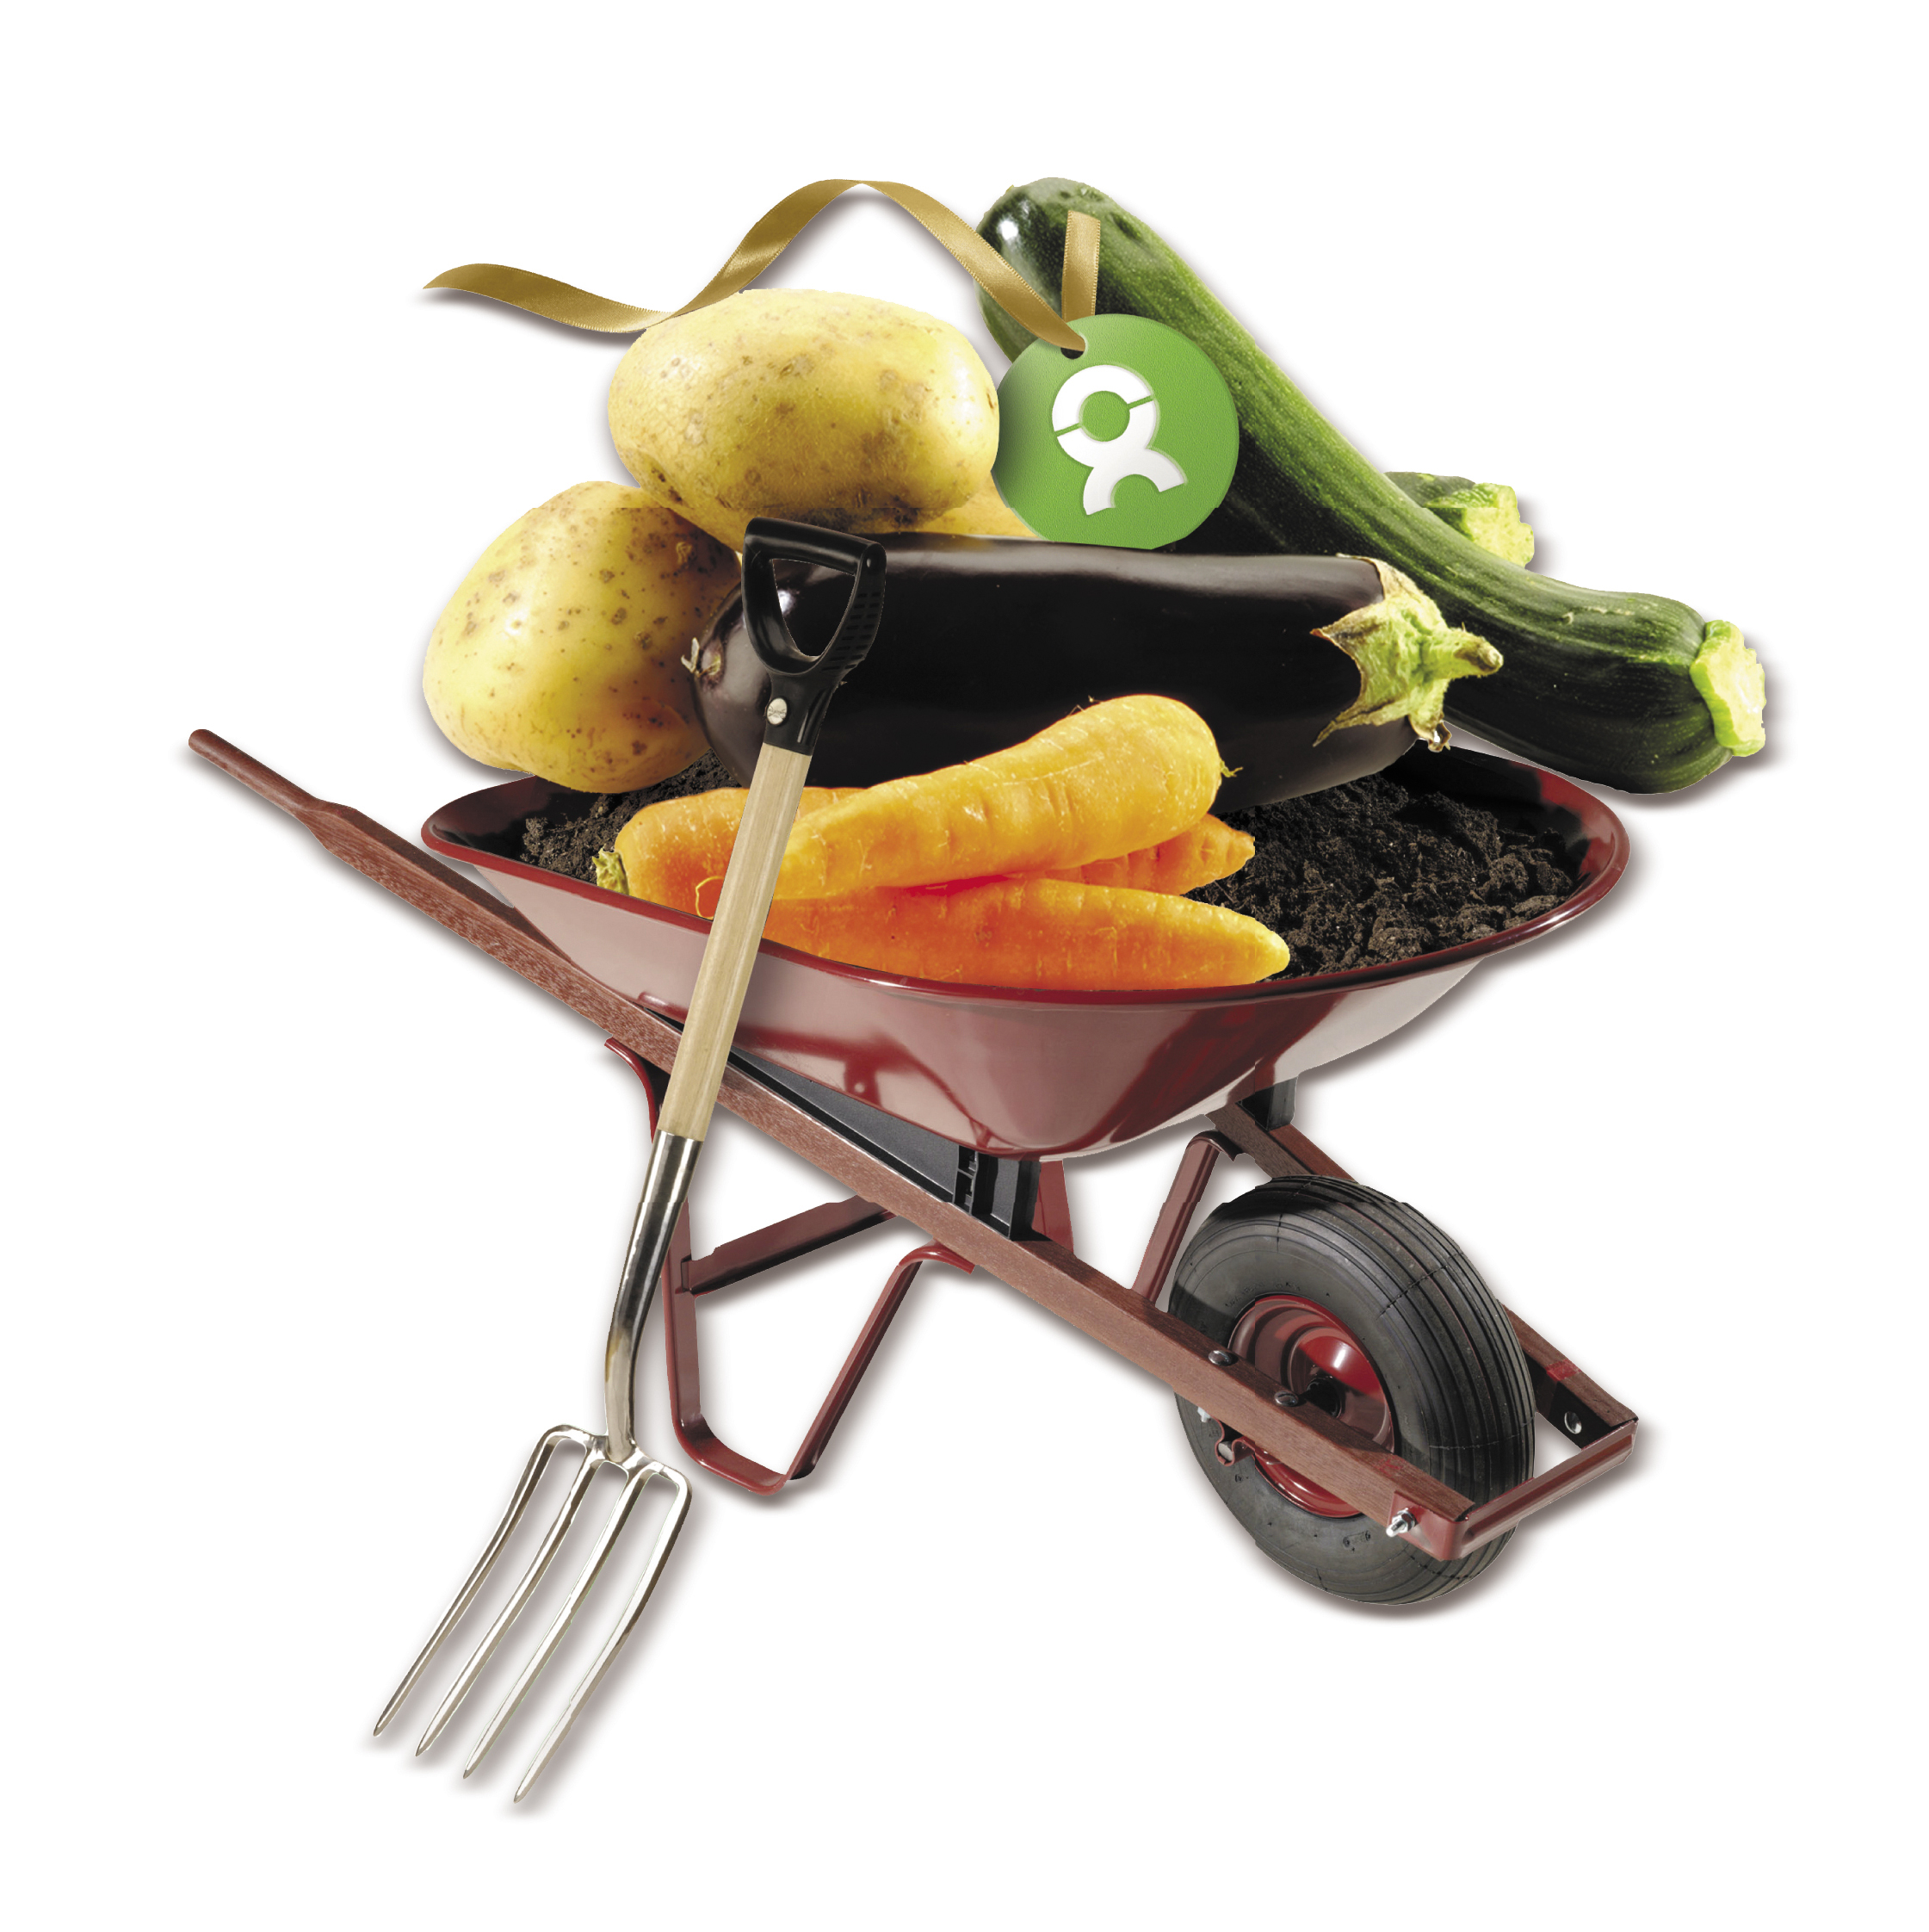 Beispiel Geschenk Spende: Grafik einer Schubkarre mit Gemüse und Kompost gefüllt. Symbolisch für eine gute Ernte durch verbesserte Anbaumethoden, das richtige Saatgut und Arbeitsgerät.